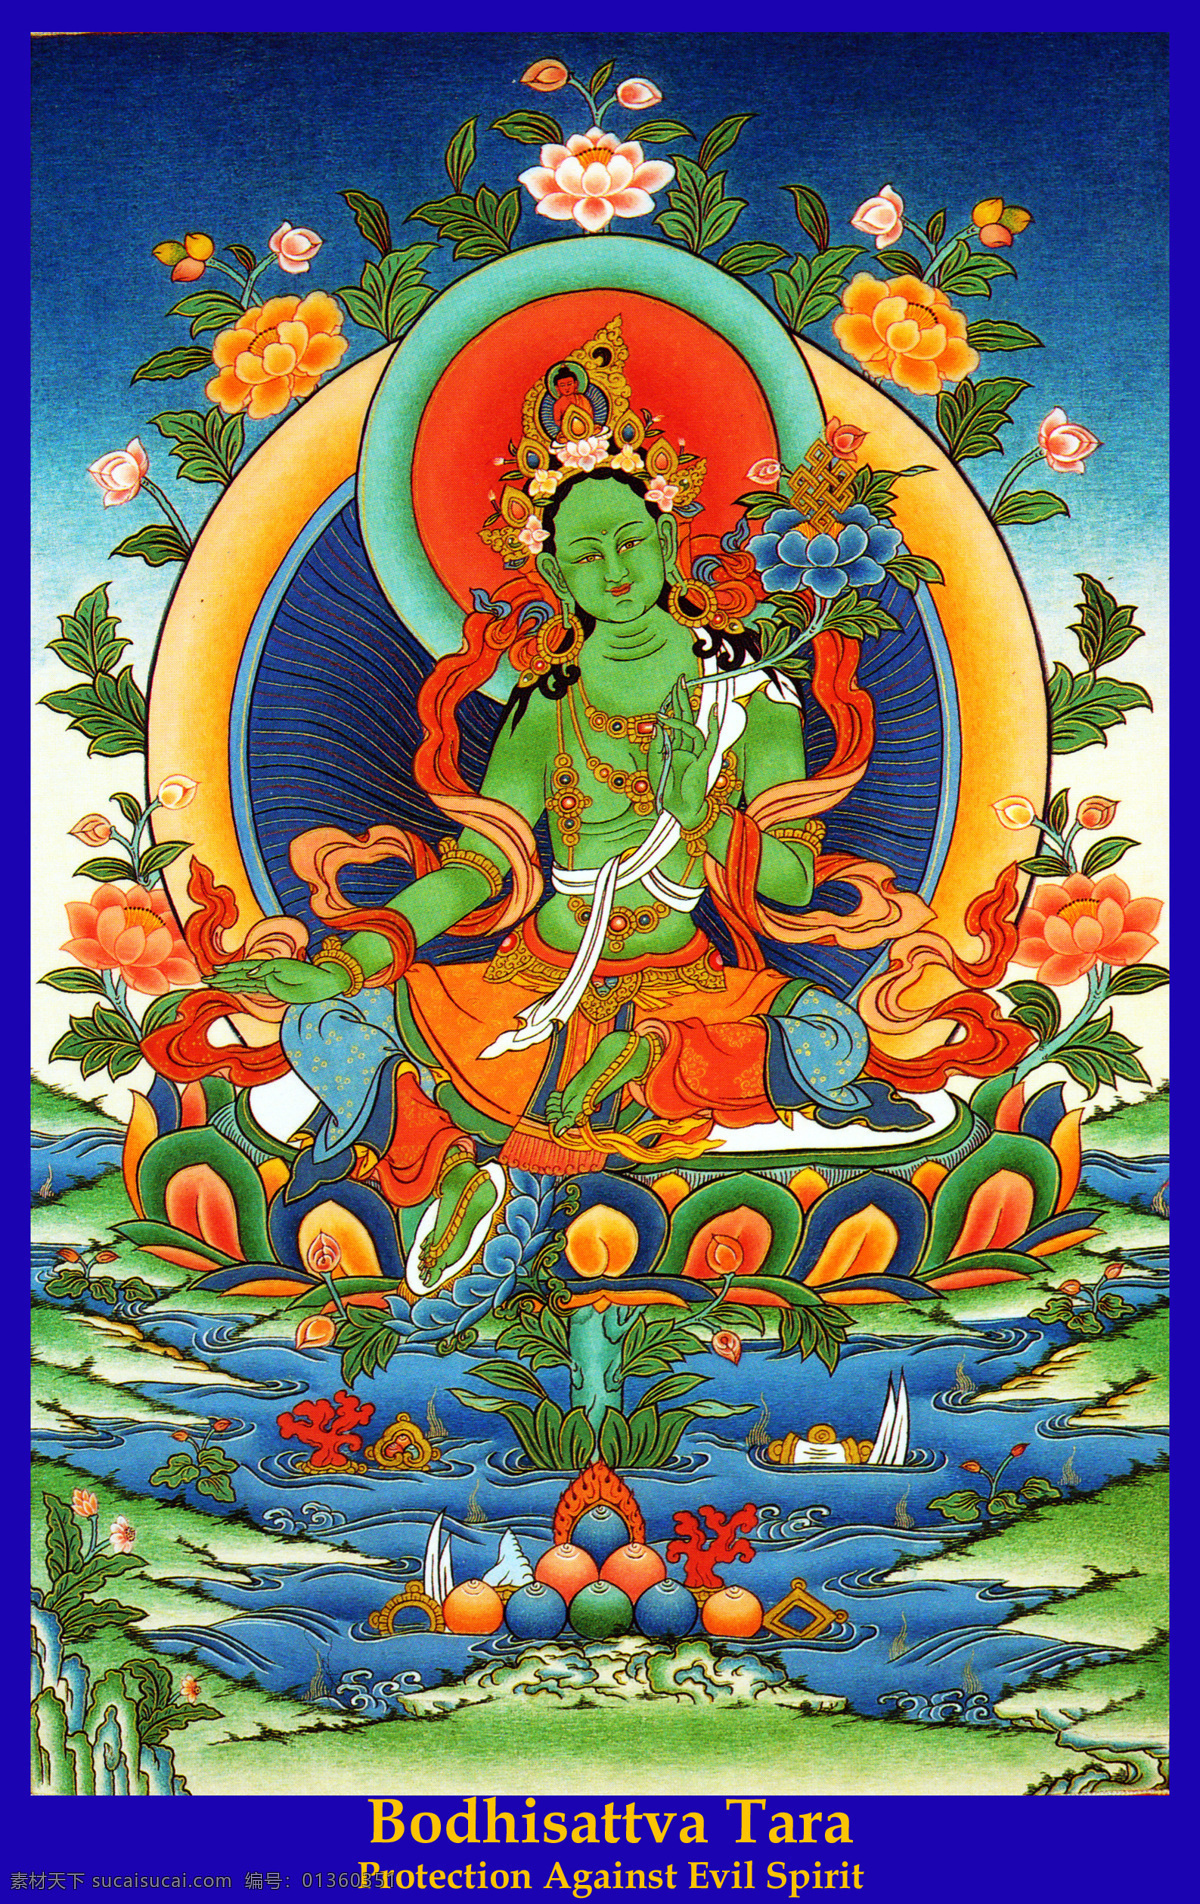 绿 度 母 莲花 文化艺术 宗教 宗教信仰 绿度母 蓝乌巴拉花 莲花宝座 二十一度母